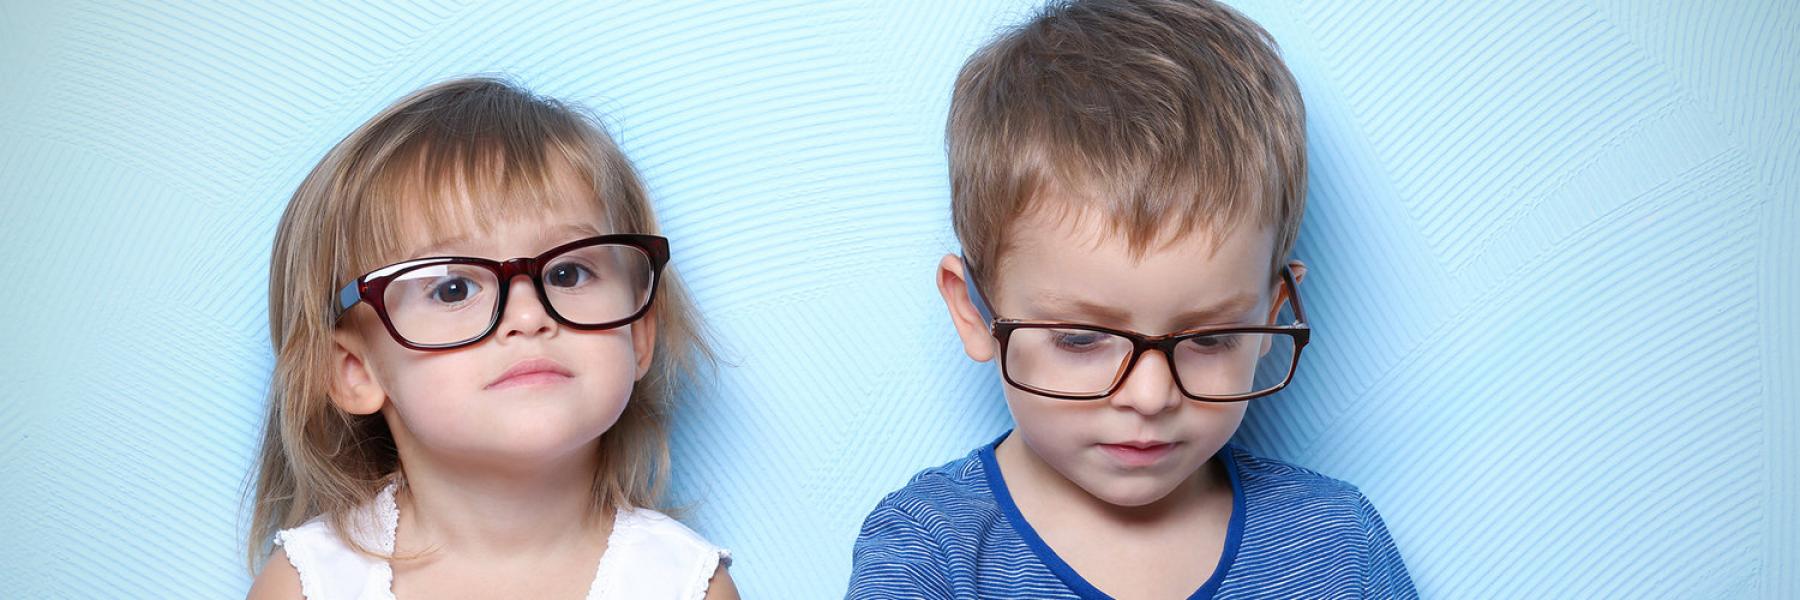 ما هي مسببات الهالات السوداء تحت العيون عند الأطفال؟